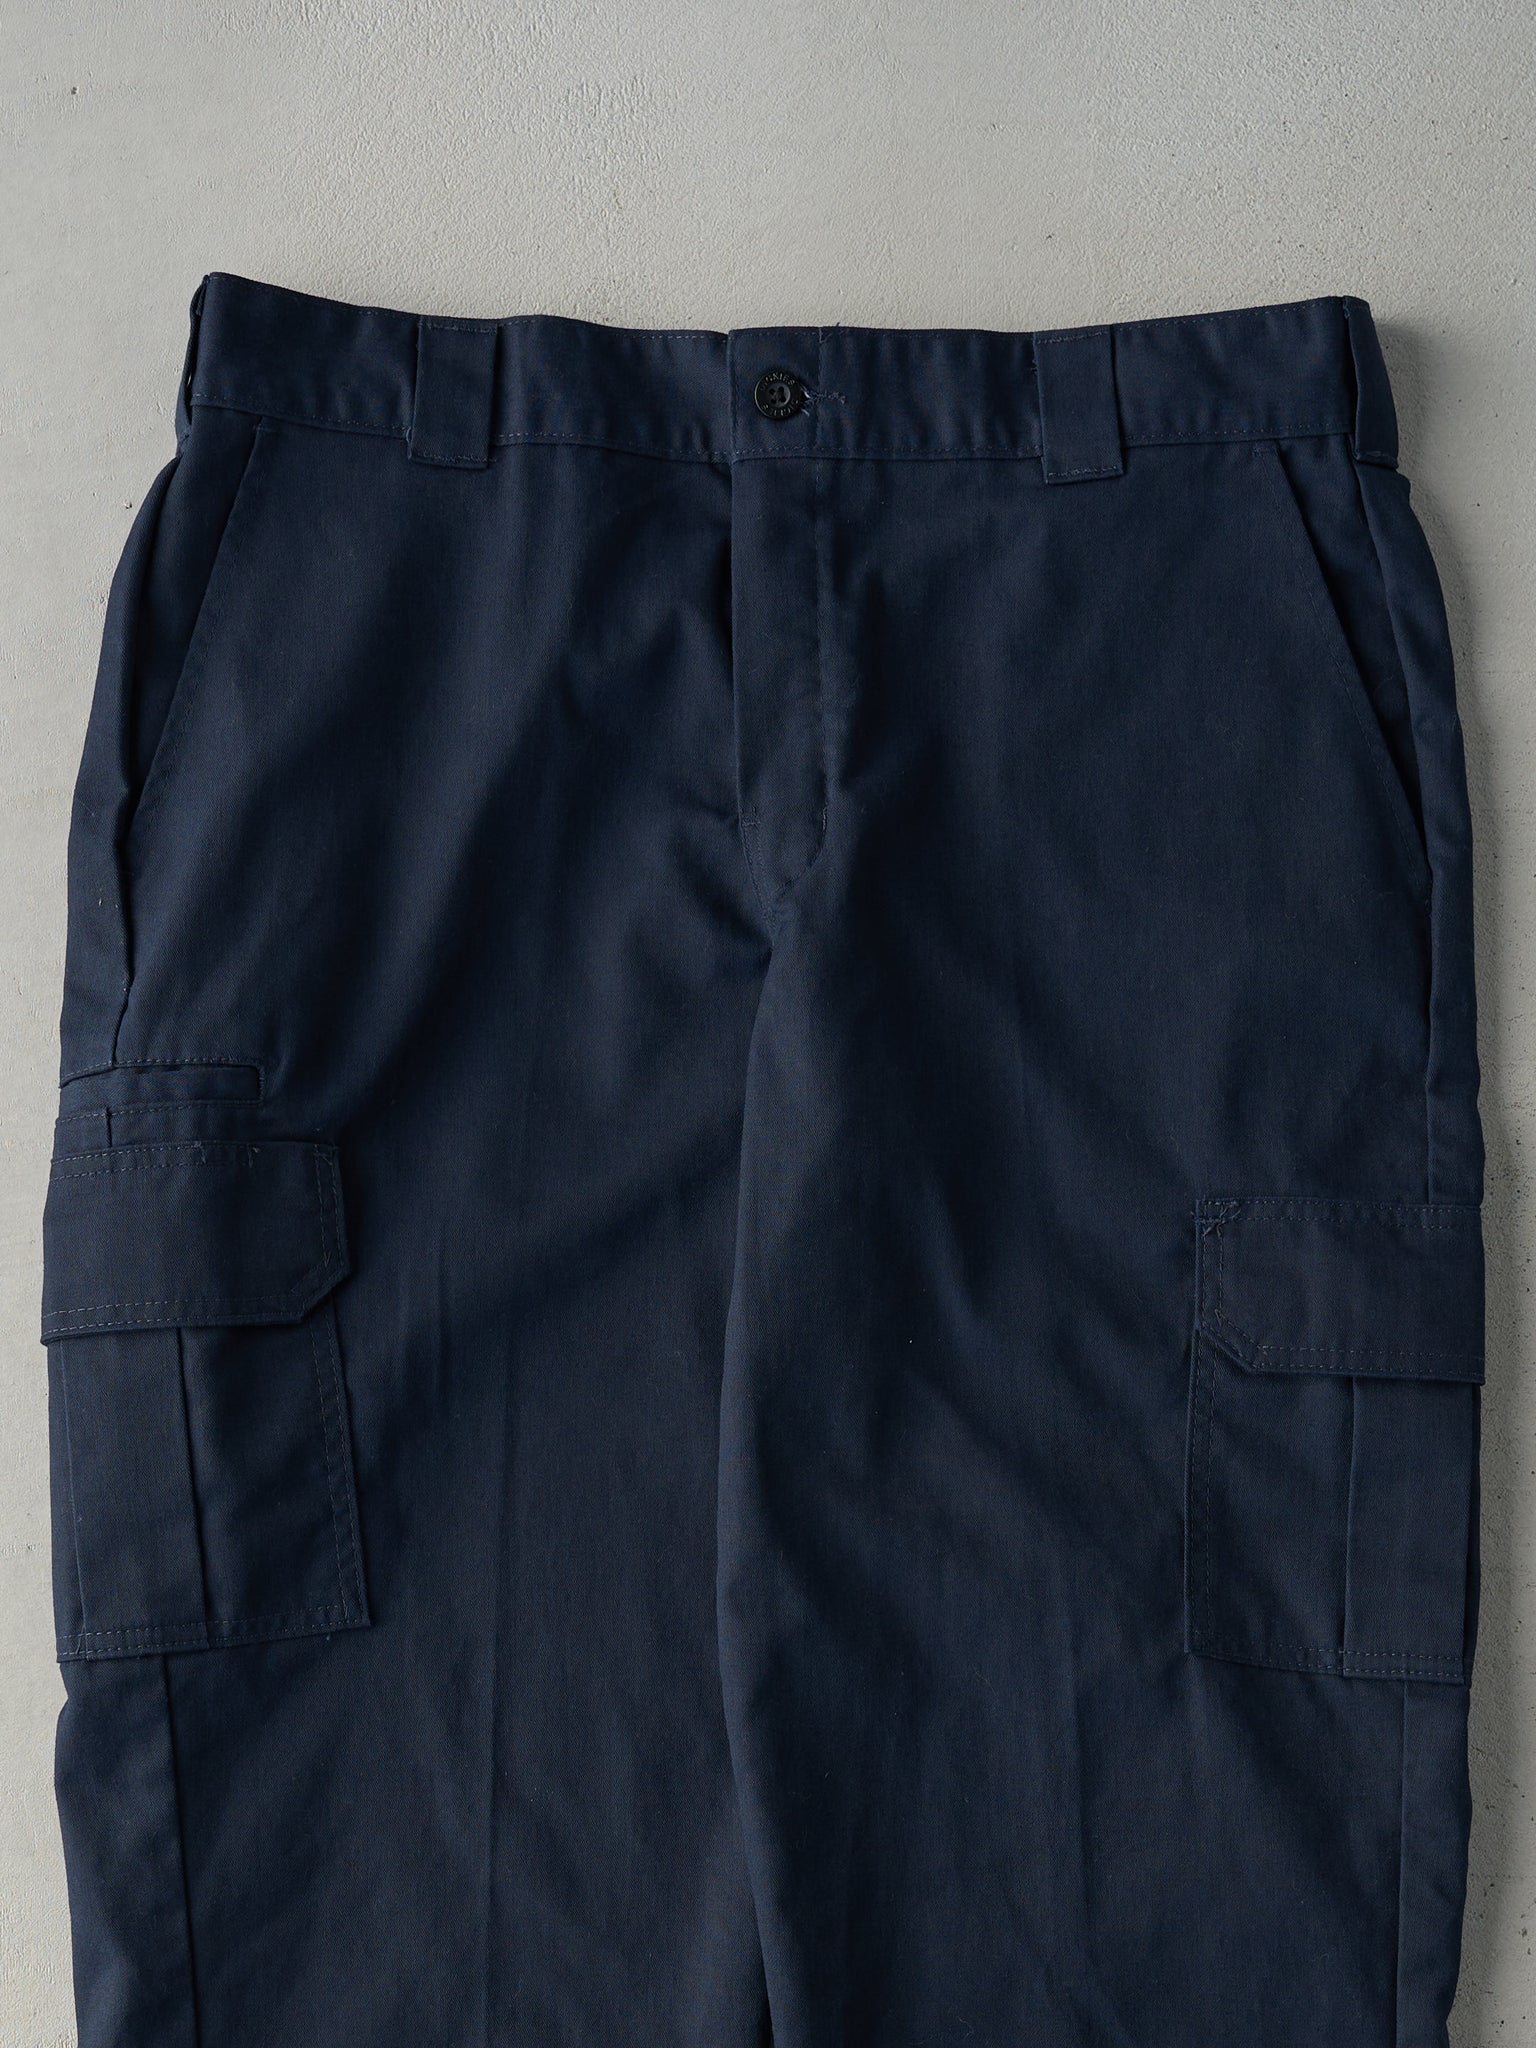 Vintage 90s Navy Blue Dickies Regular Straight Pants (37x29.5)